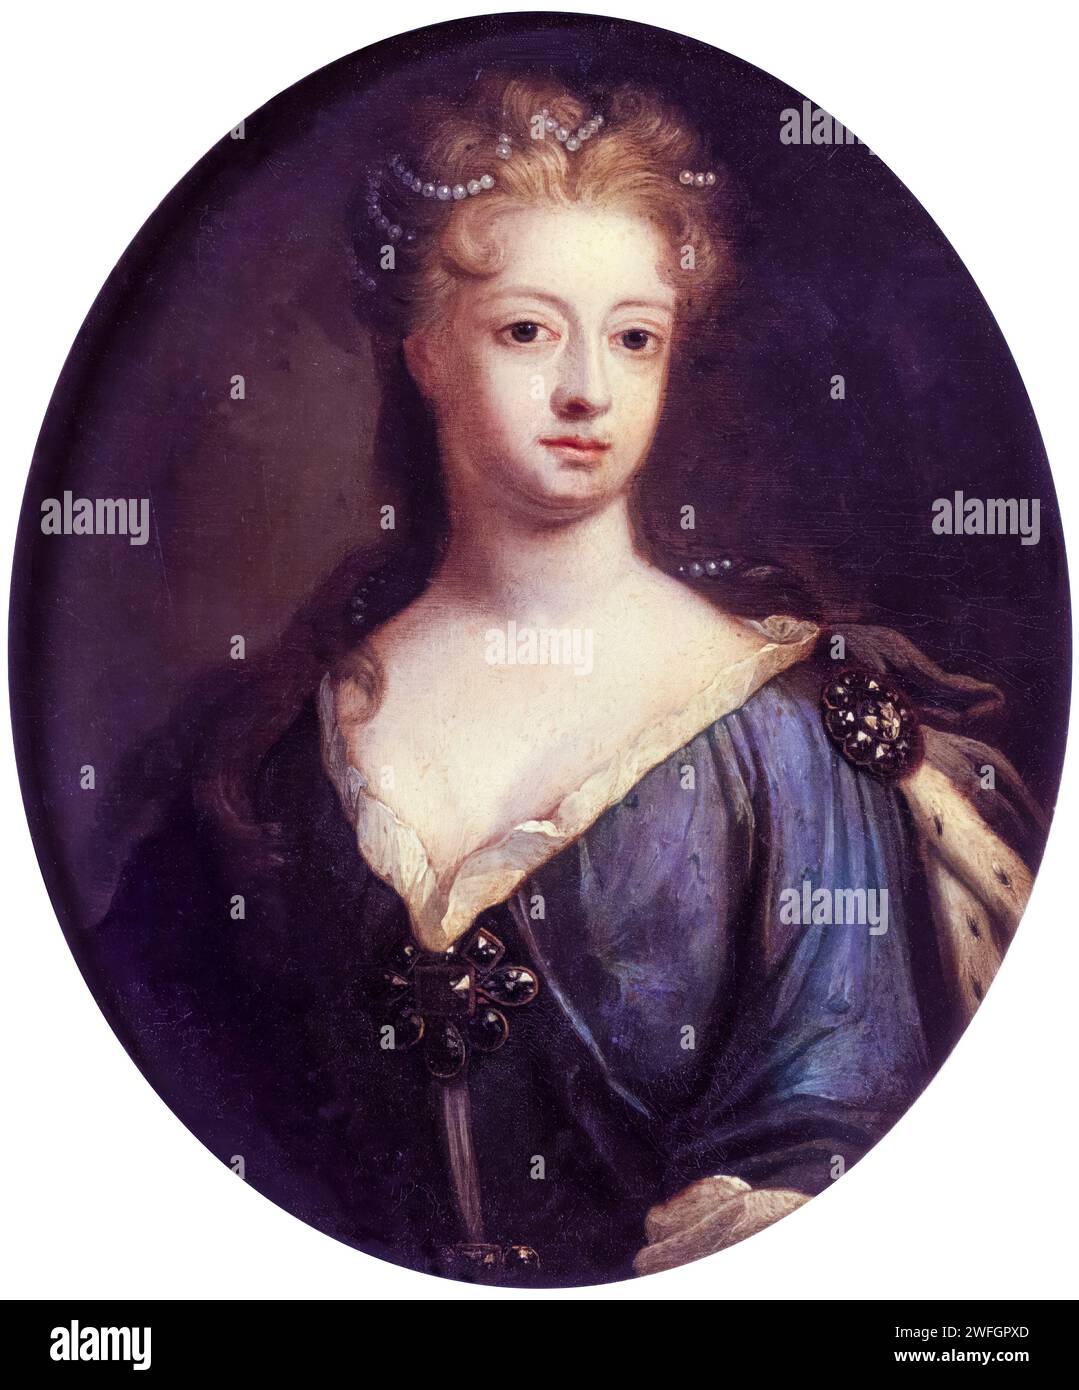 Sofia Dorotea di Hannover (1687-1757), regina consorte di Prussia ed eletttrice di Brandeburgo (1713-1740), ritrattista a olio su rame dopo Johann Leonhard Hirschmann, 1706 Foto Stock